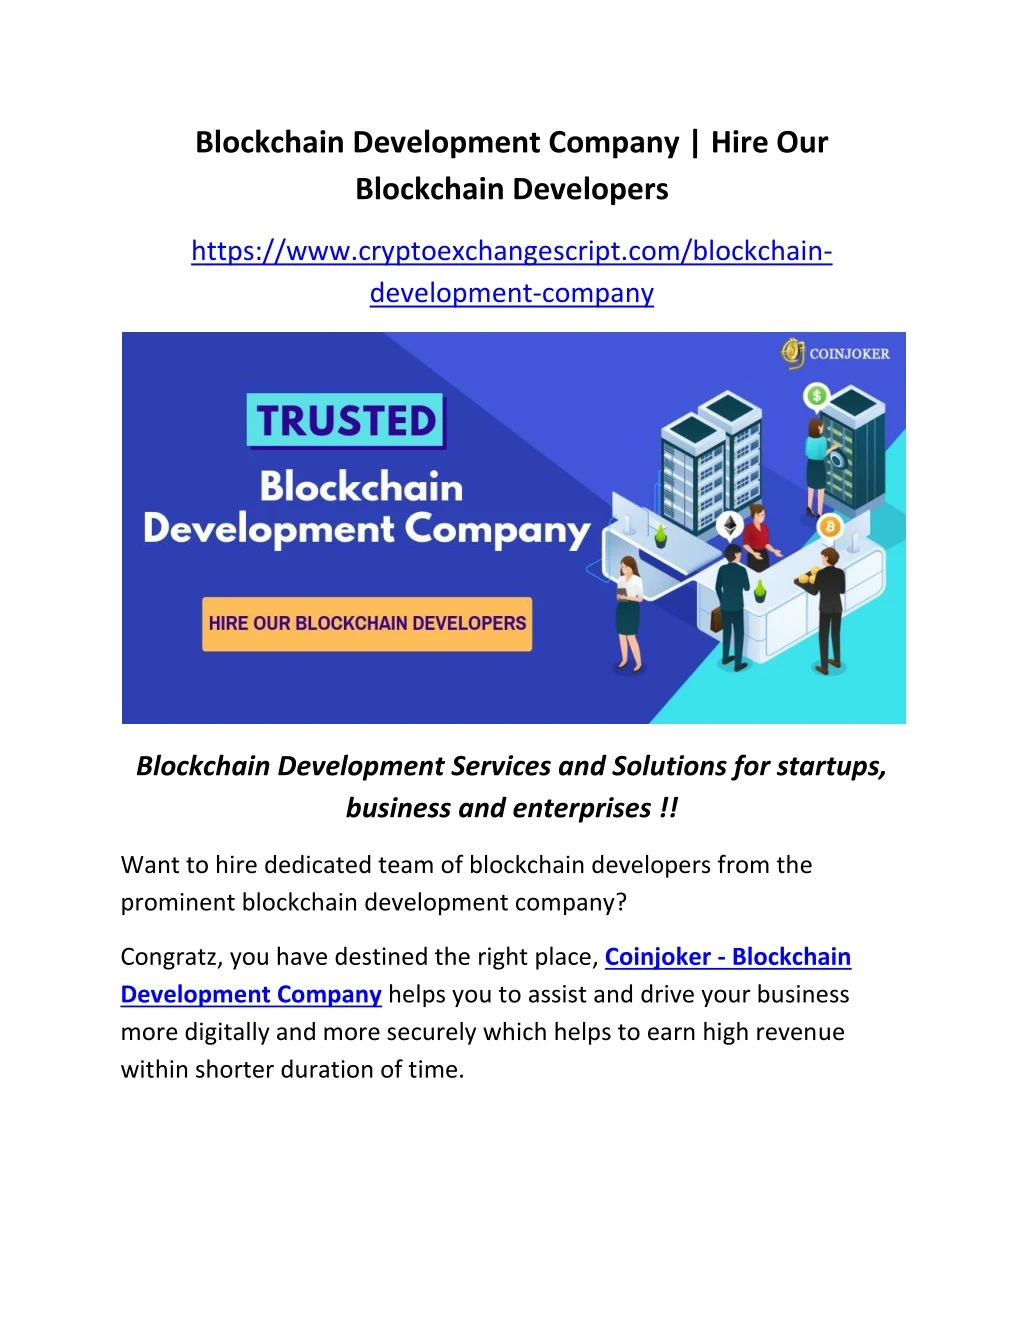 blockchain development company hire